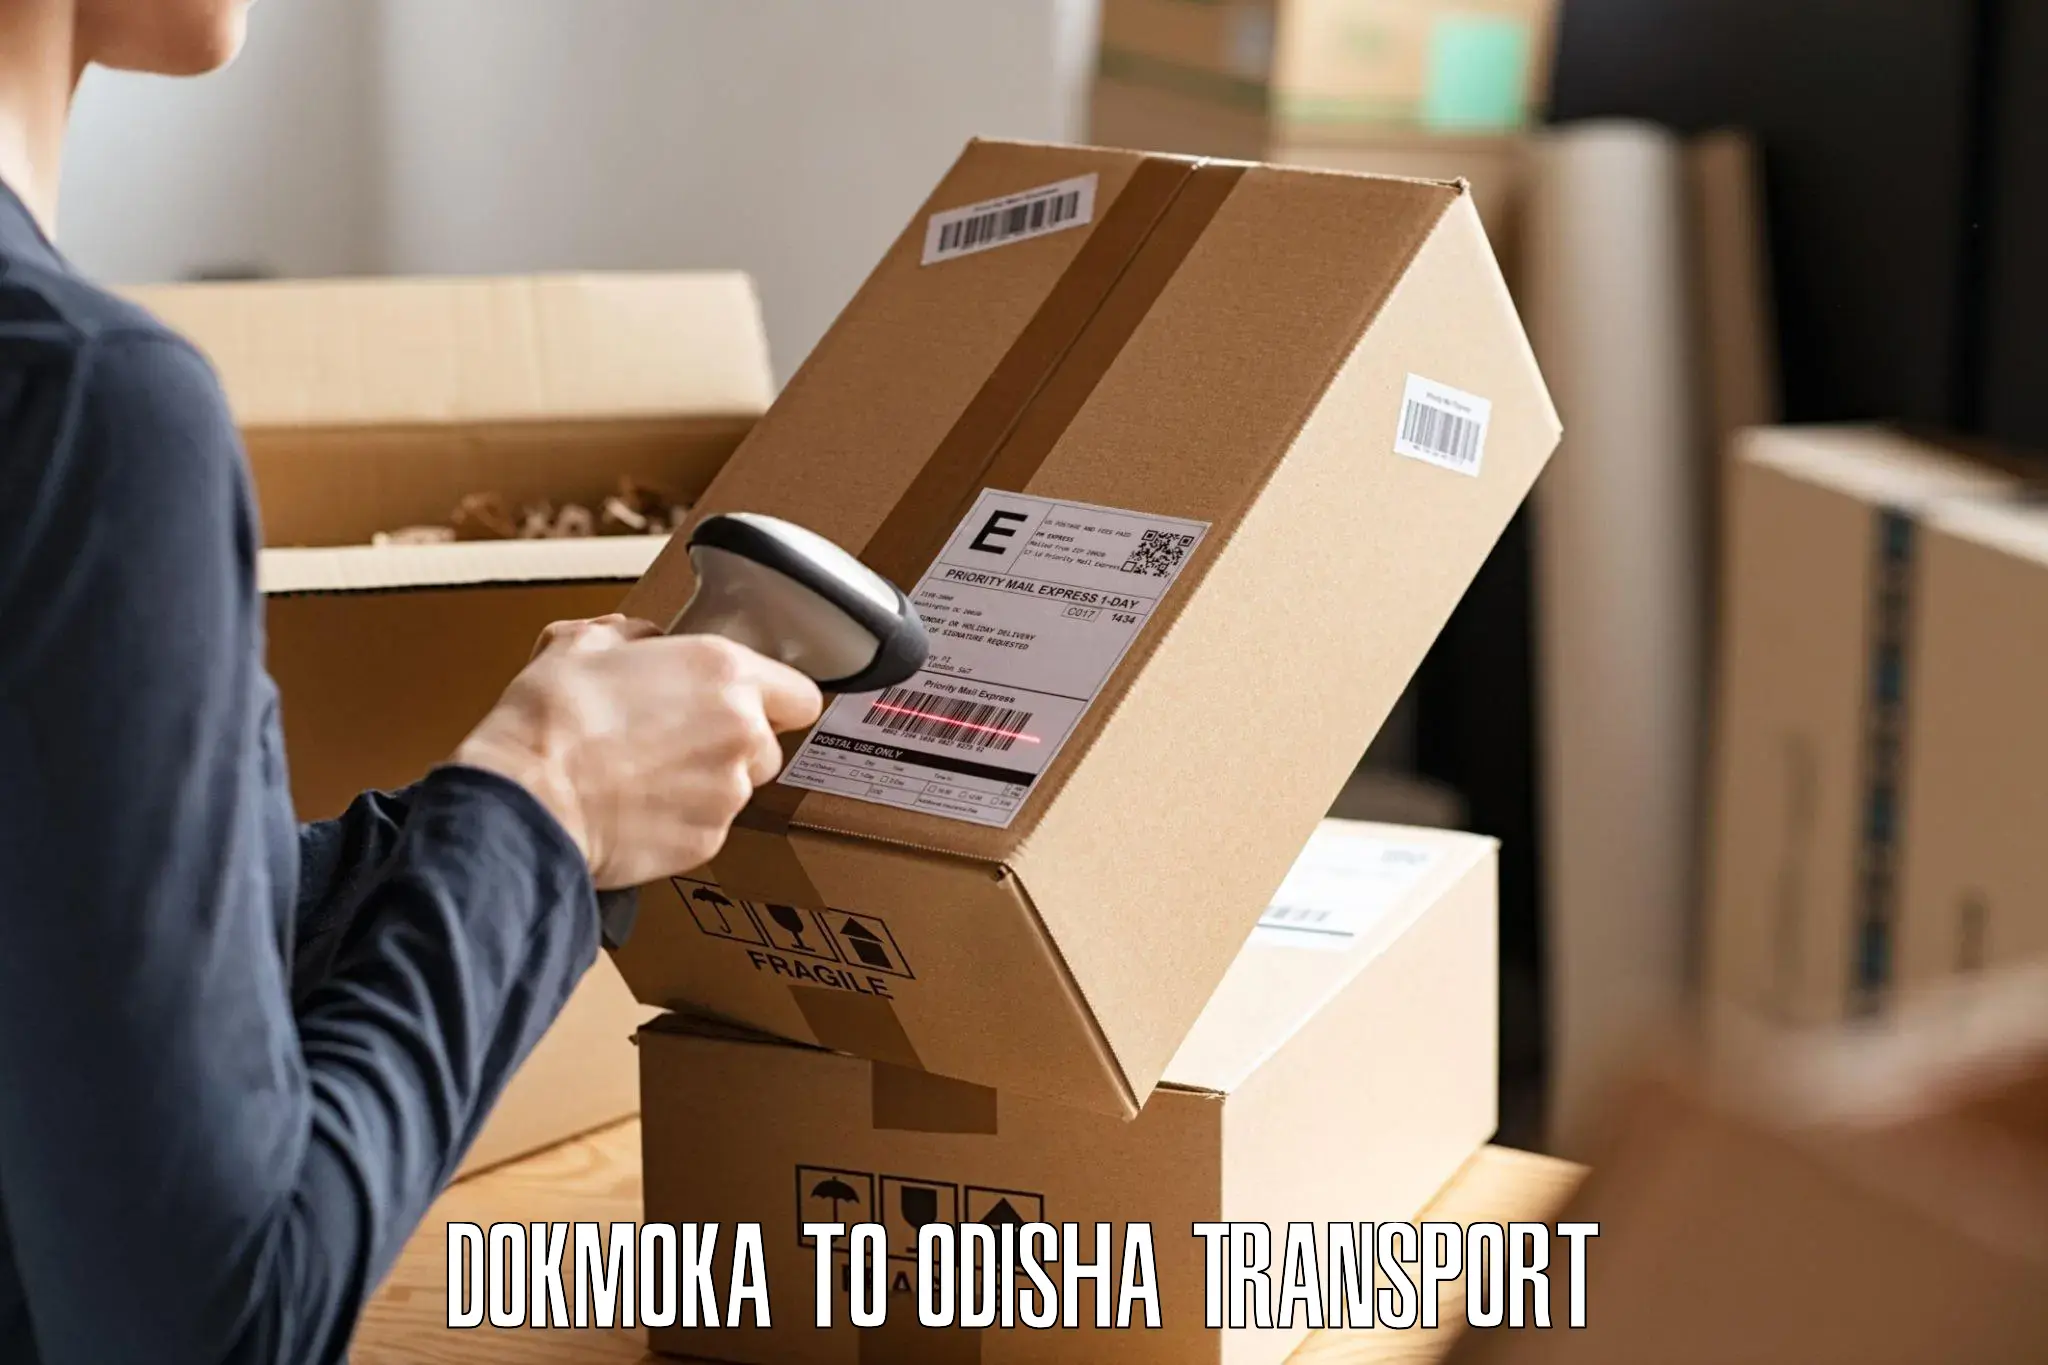 Road transport services Dokmoka to Kendrapara